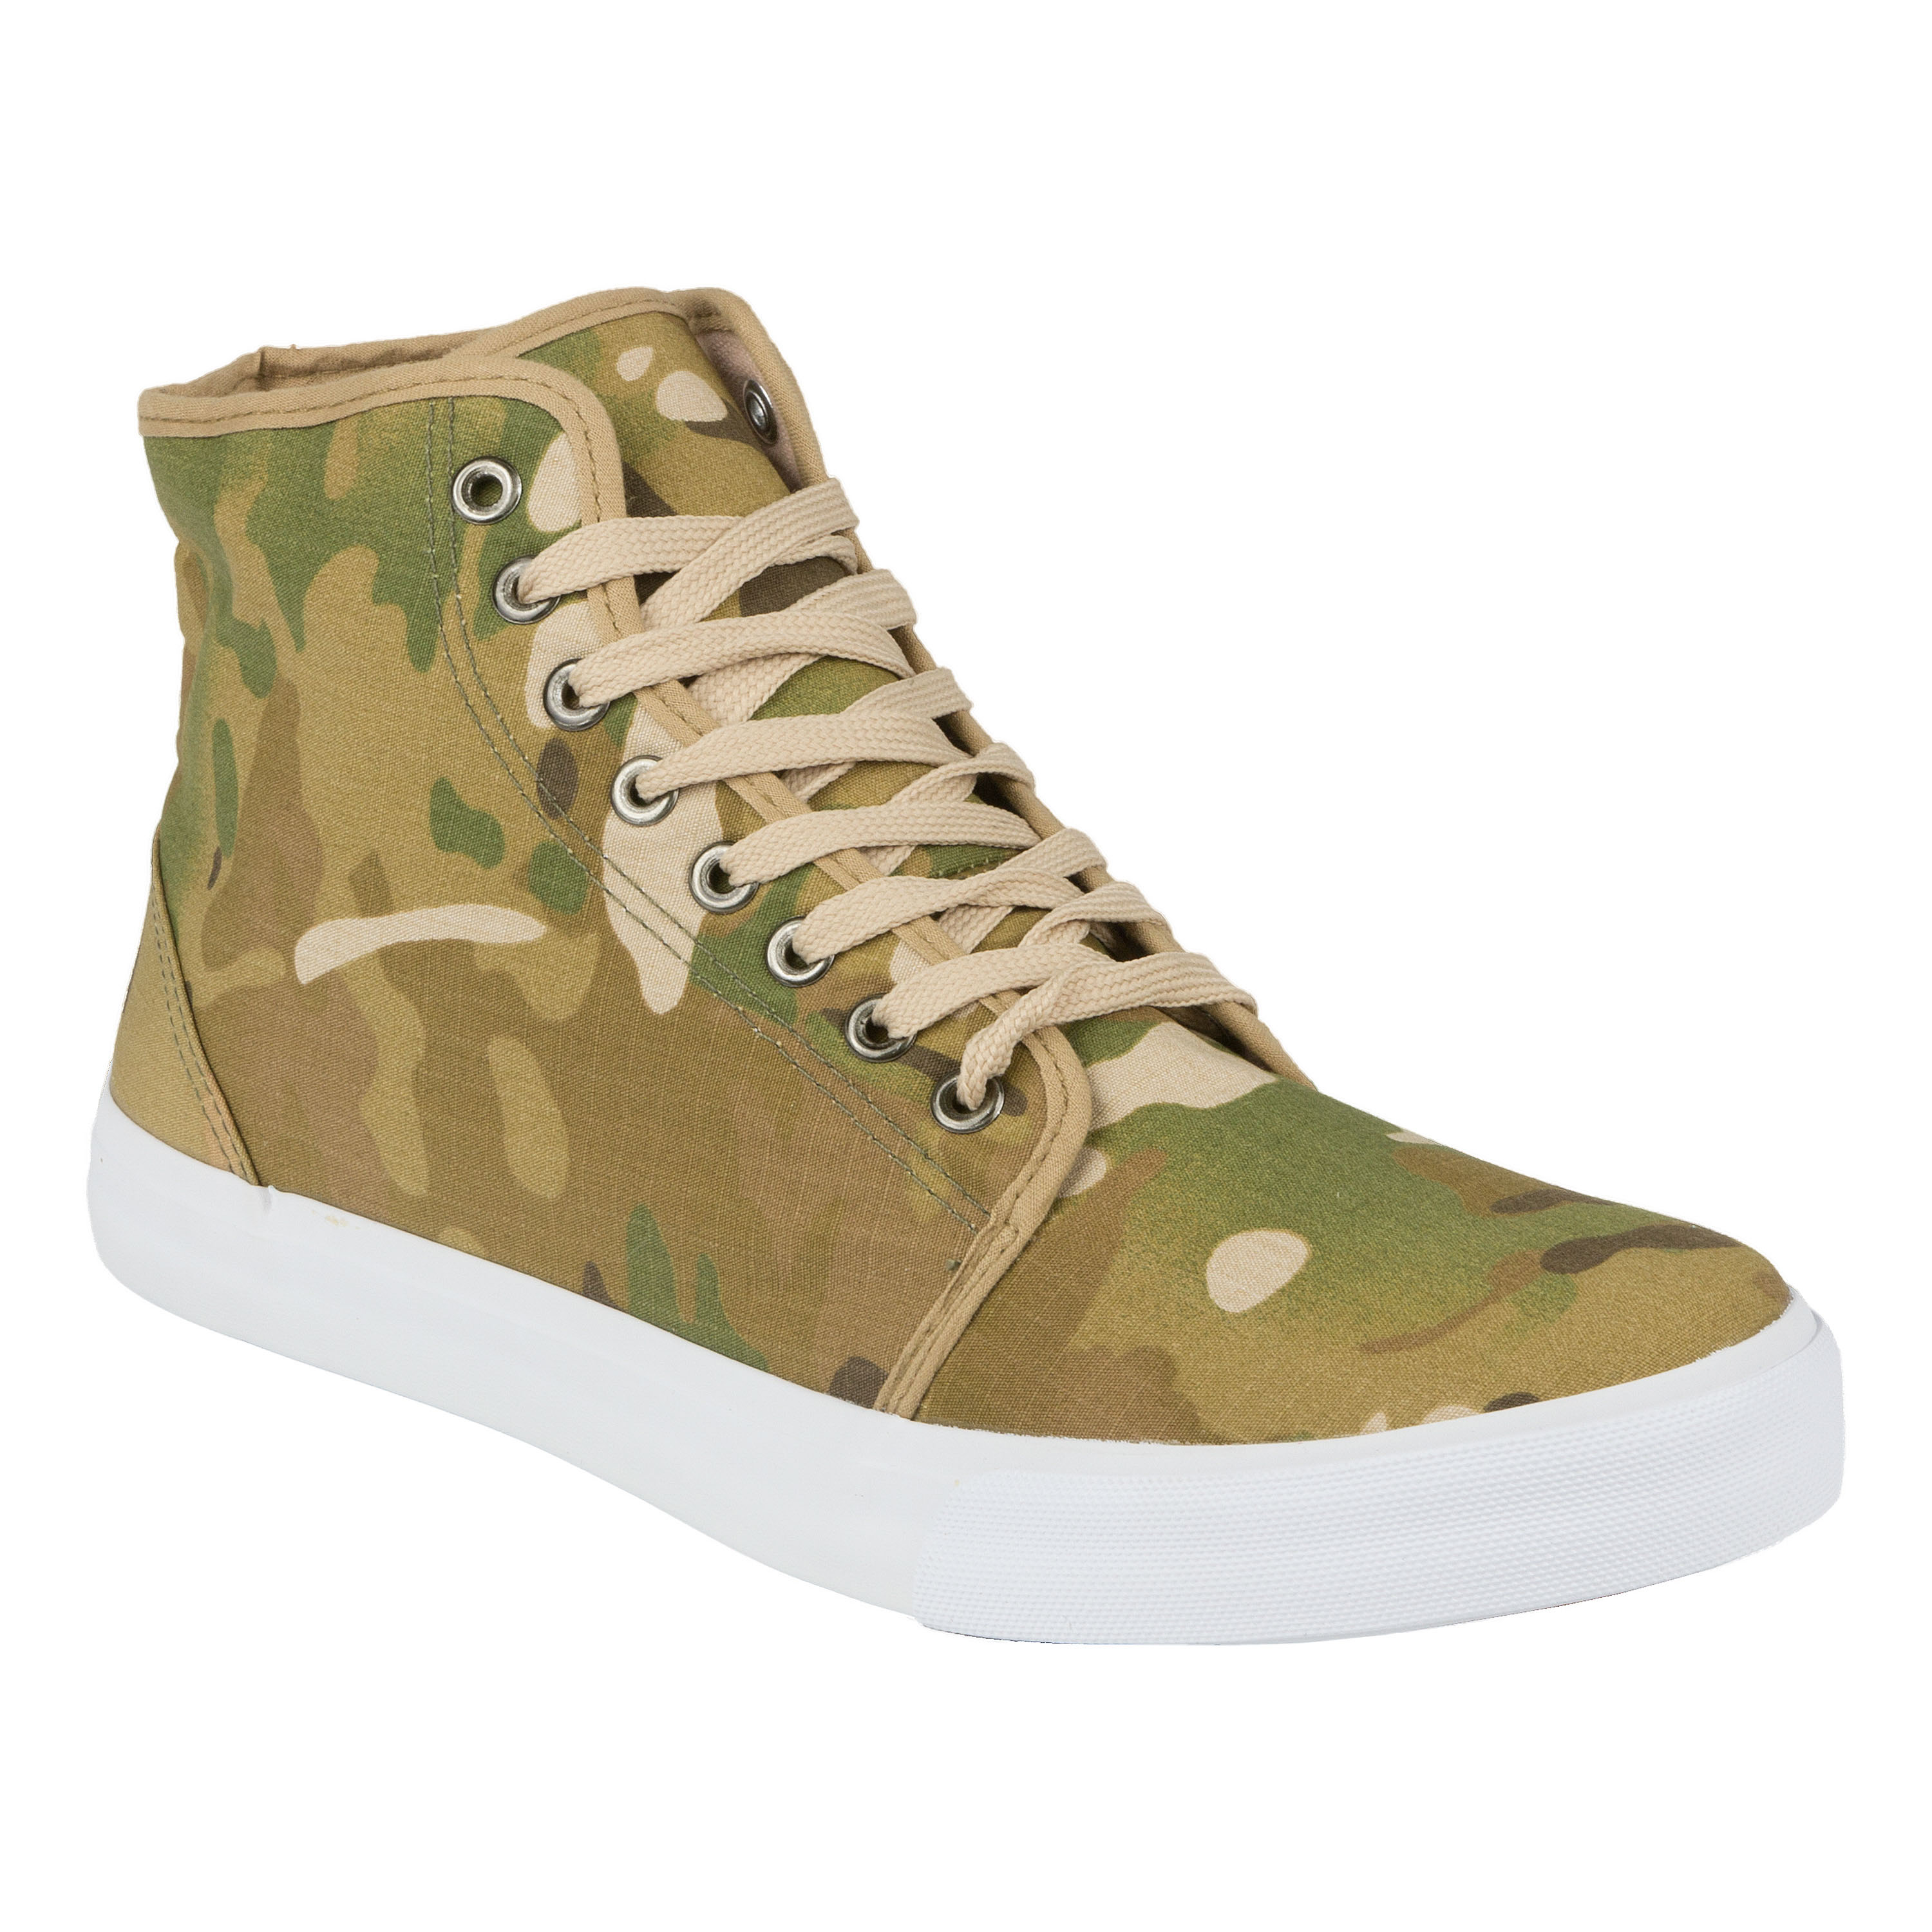 Army Sneaker multitarn | Army Sneaker multitarn | Other Shoes | Shoes ...